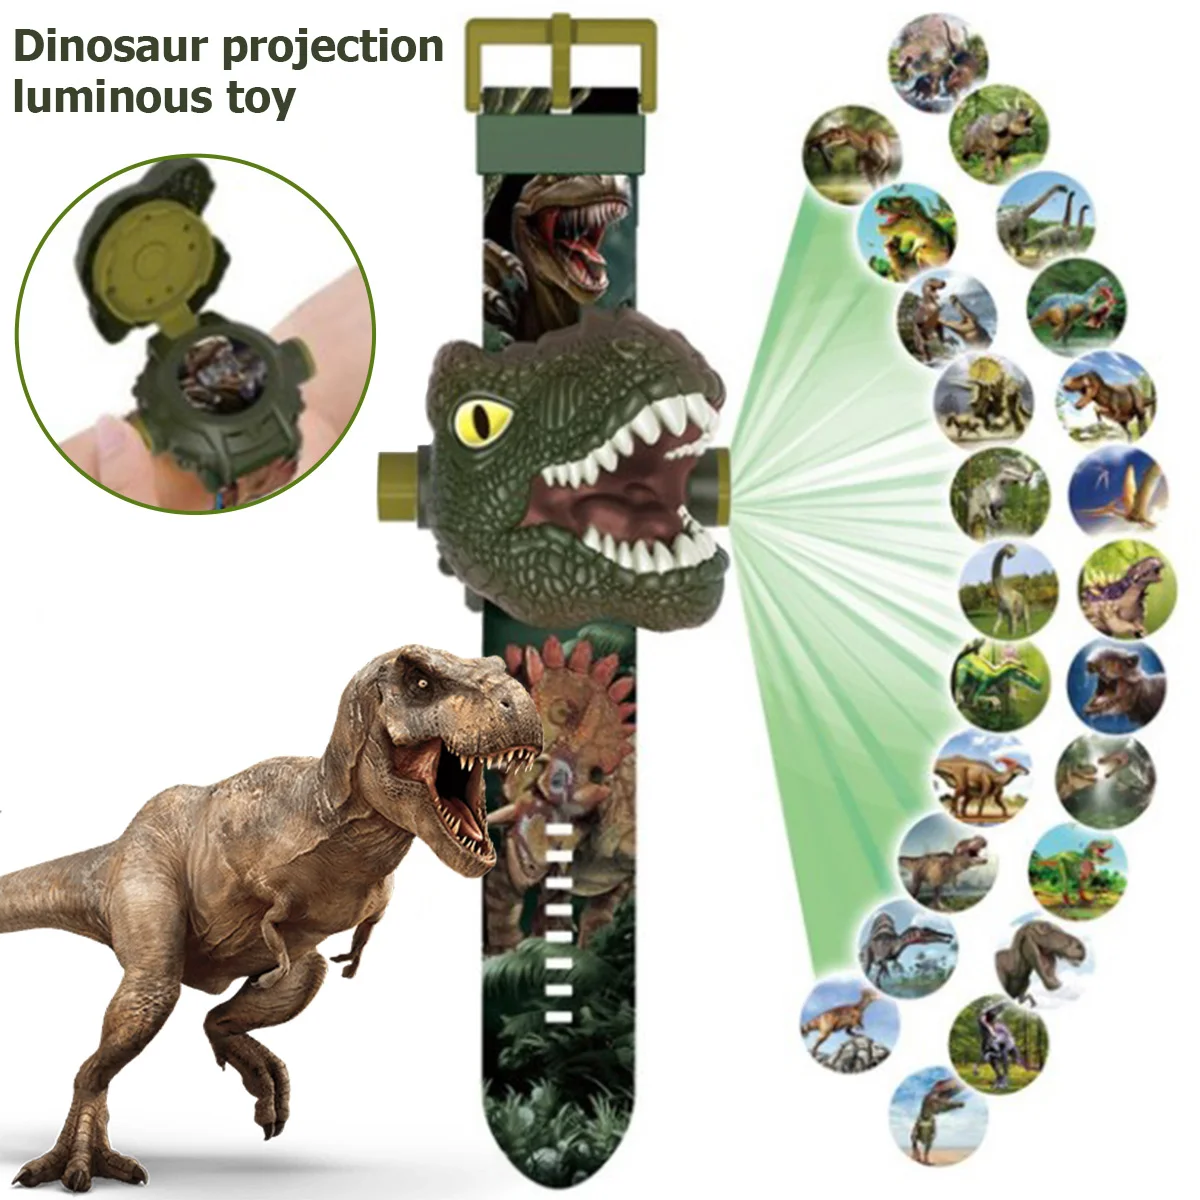 Jam Tangan Proyeksi Dinosaurus Anak-anak Jam Tangan Pola Dinosaurus Kartun Proyektor Proyektor Di Pergelangan Tangan Mainan Pendidikan Anak-anak Laki-laki Perempuan